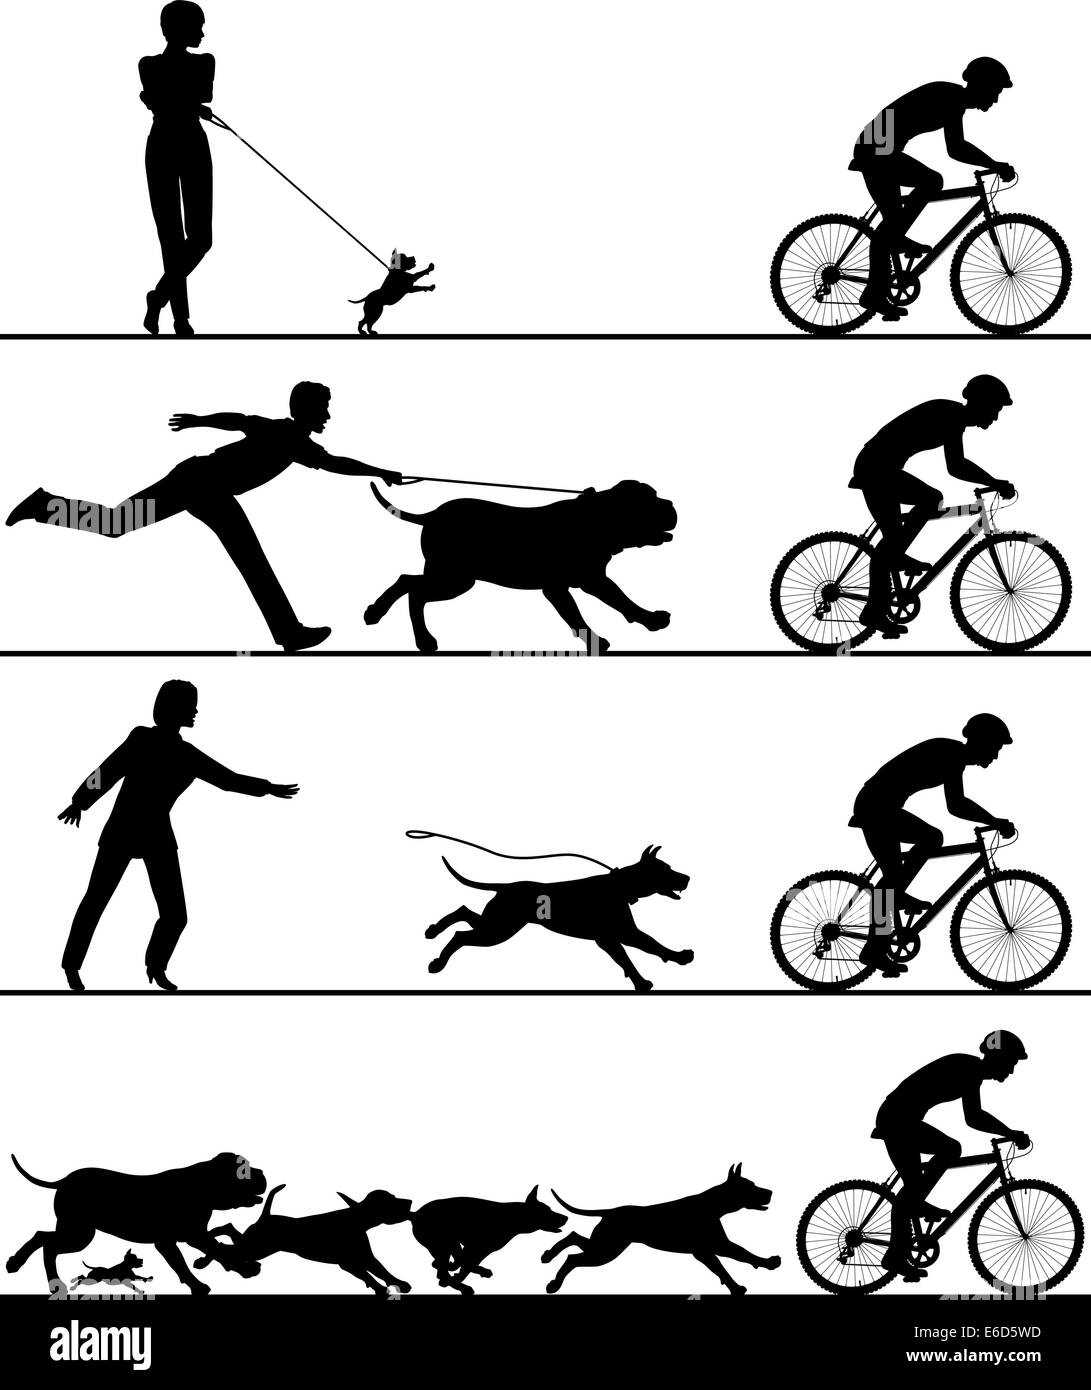 Quatre silhouettes vecteur modifiable de chiens réagissant à un cycliste de passage avec tous les éléments en tant qu'objets séparés Illustration de Vecteur